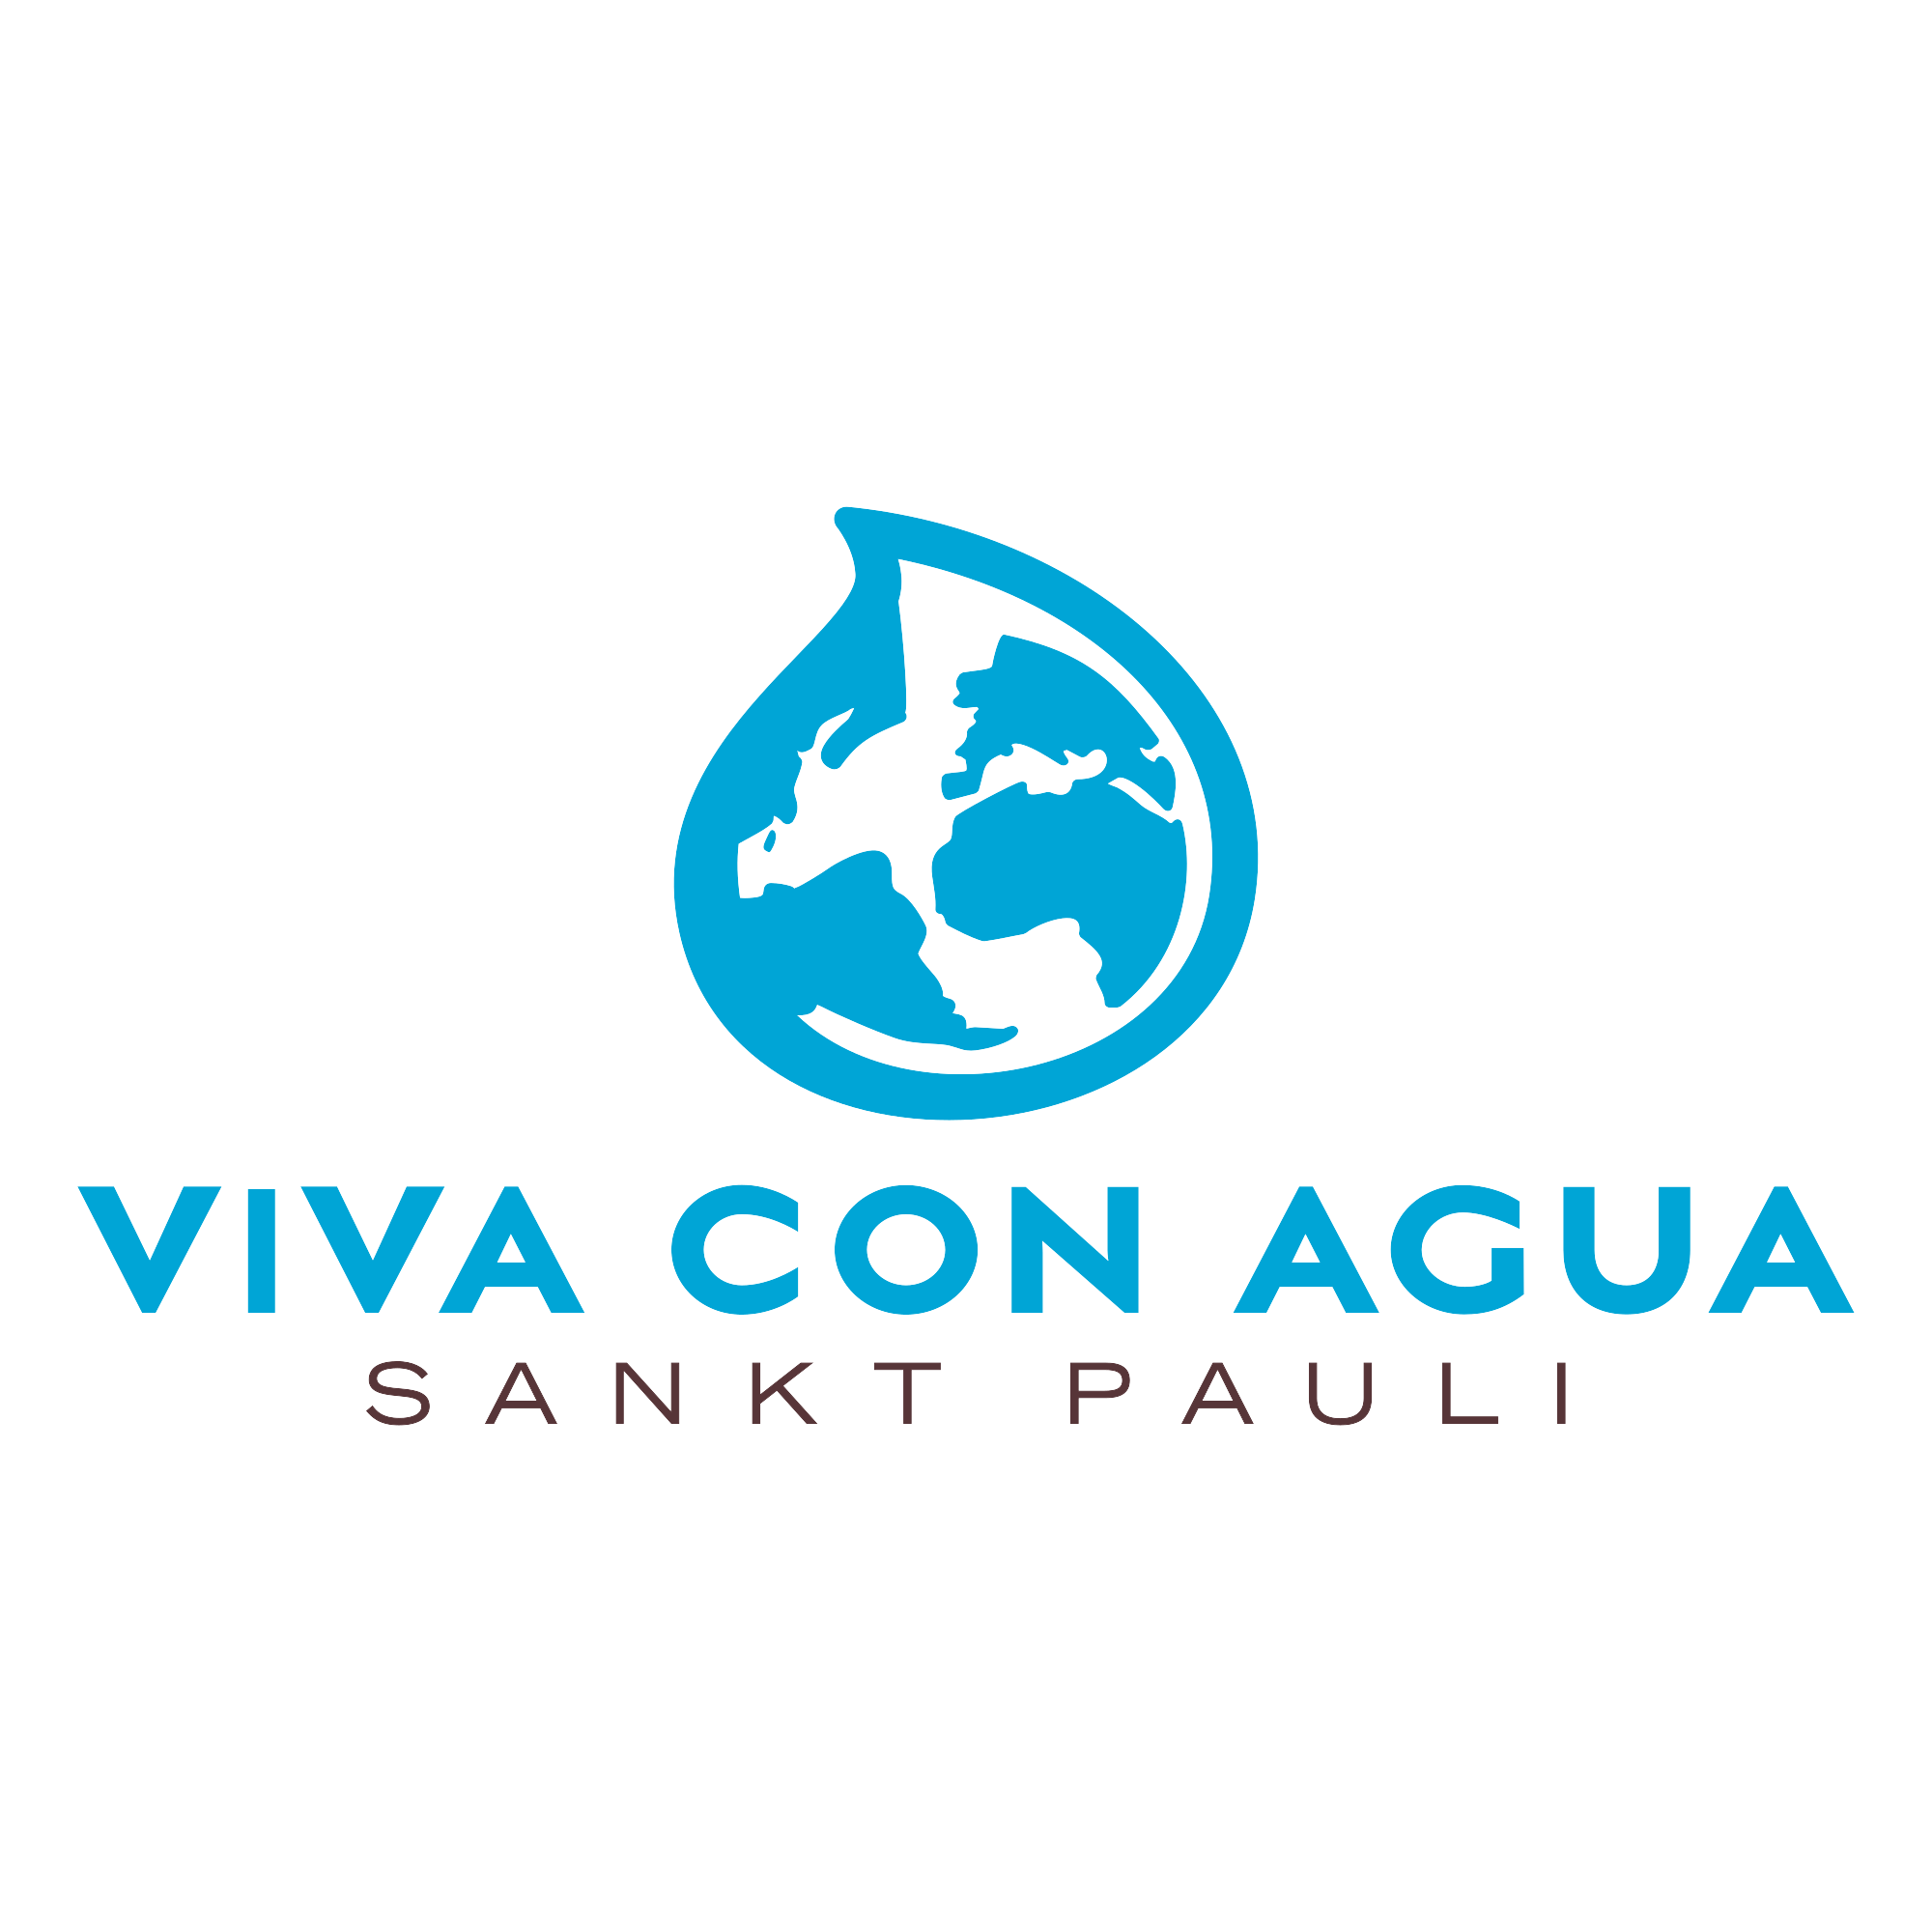 (c) Vivaconagua.org